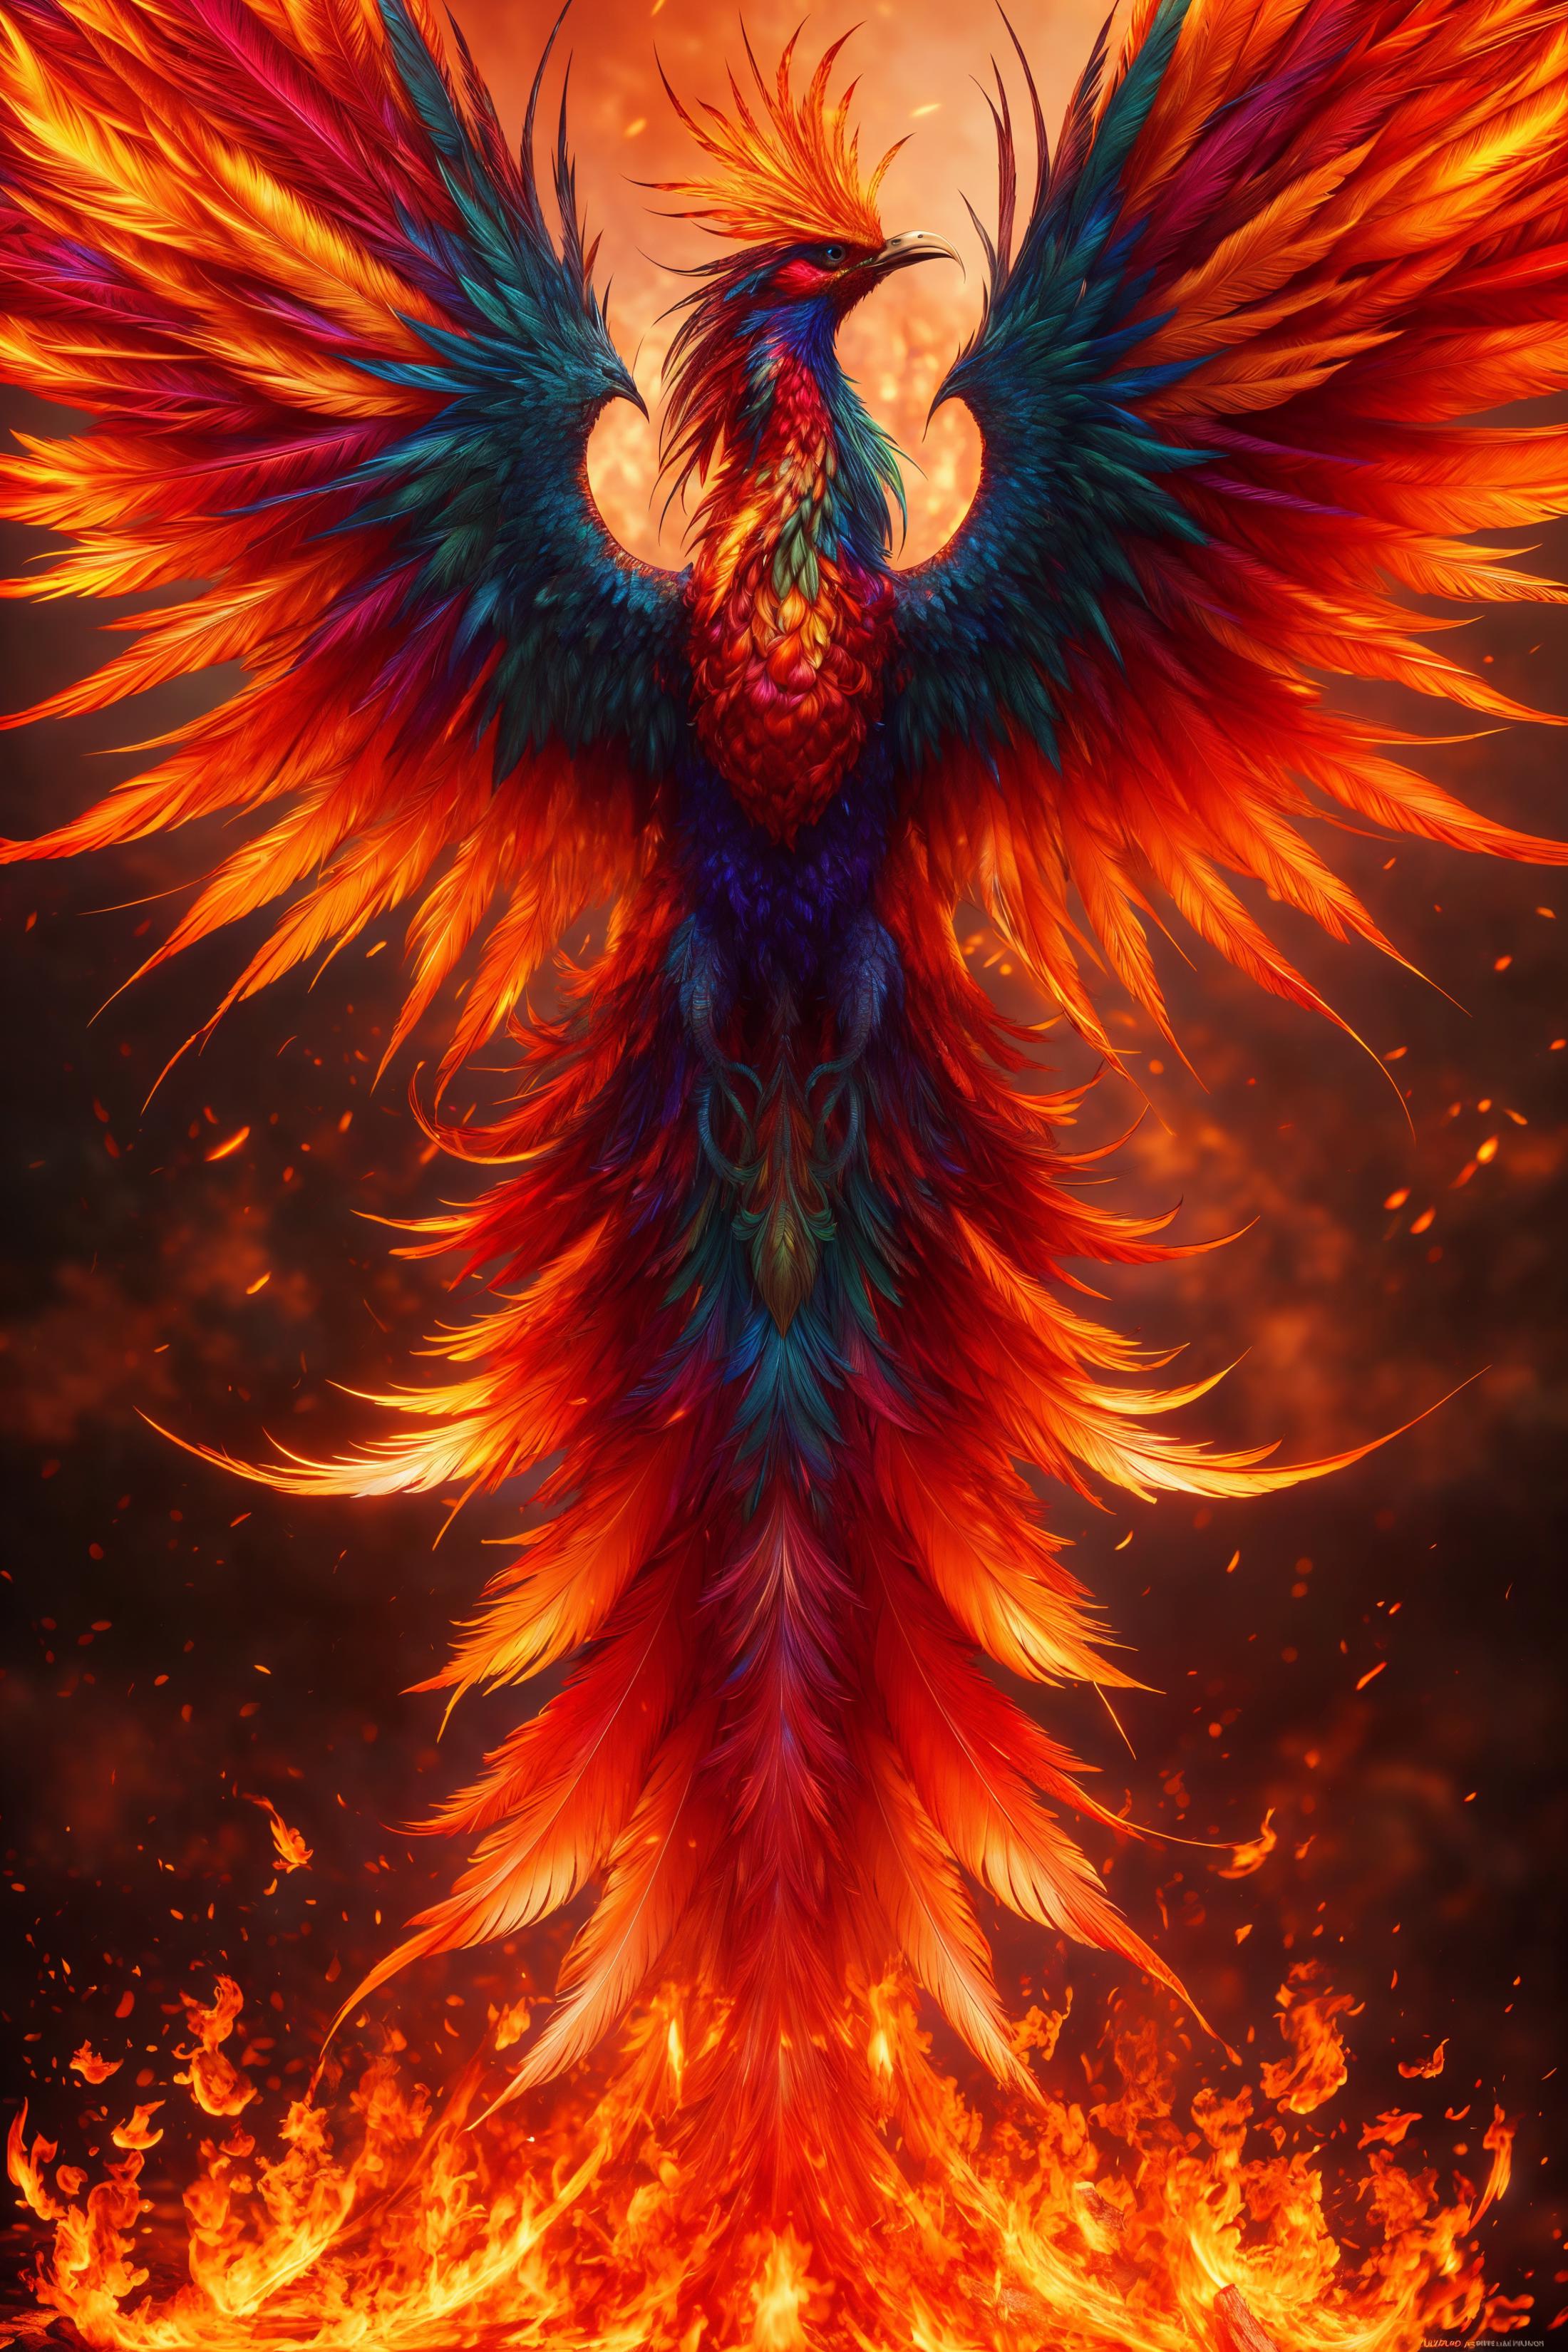 守护圣兽-朱雀Phoenix image by Jellon